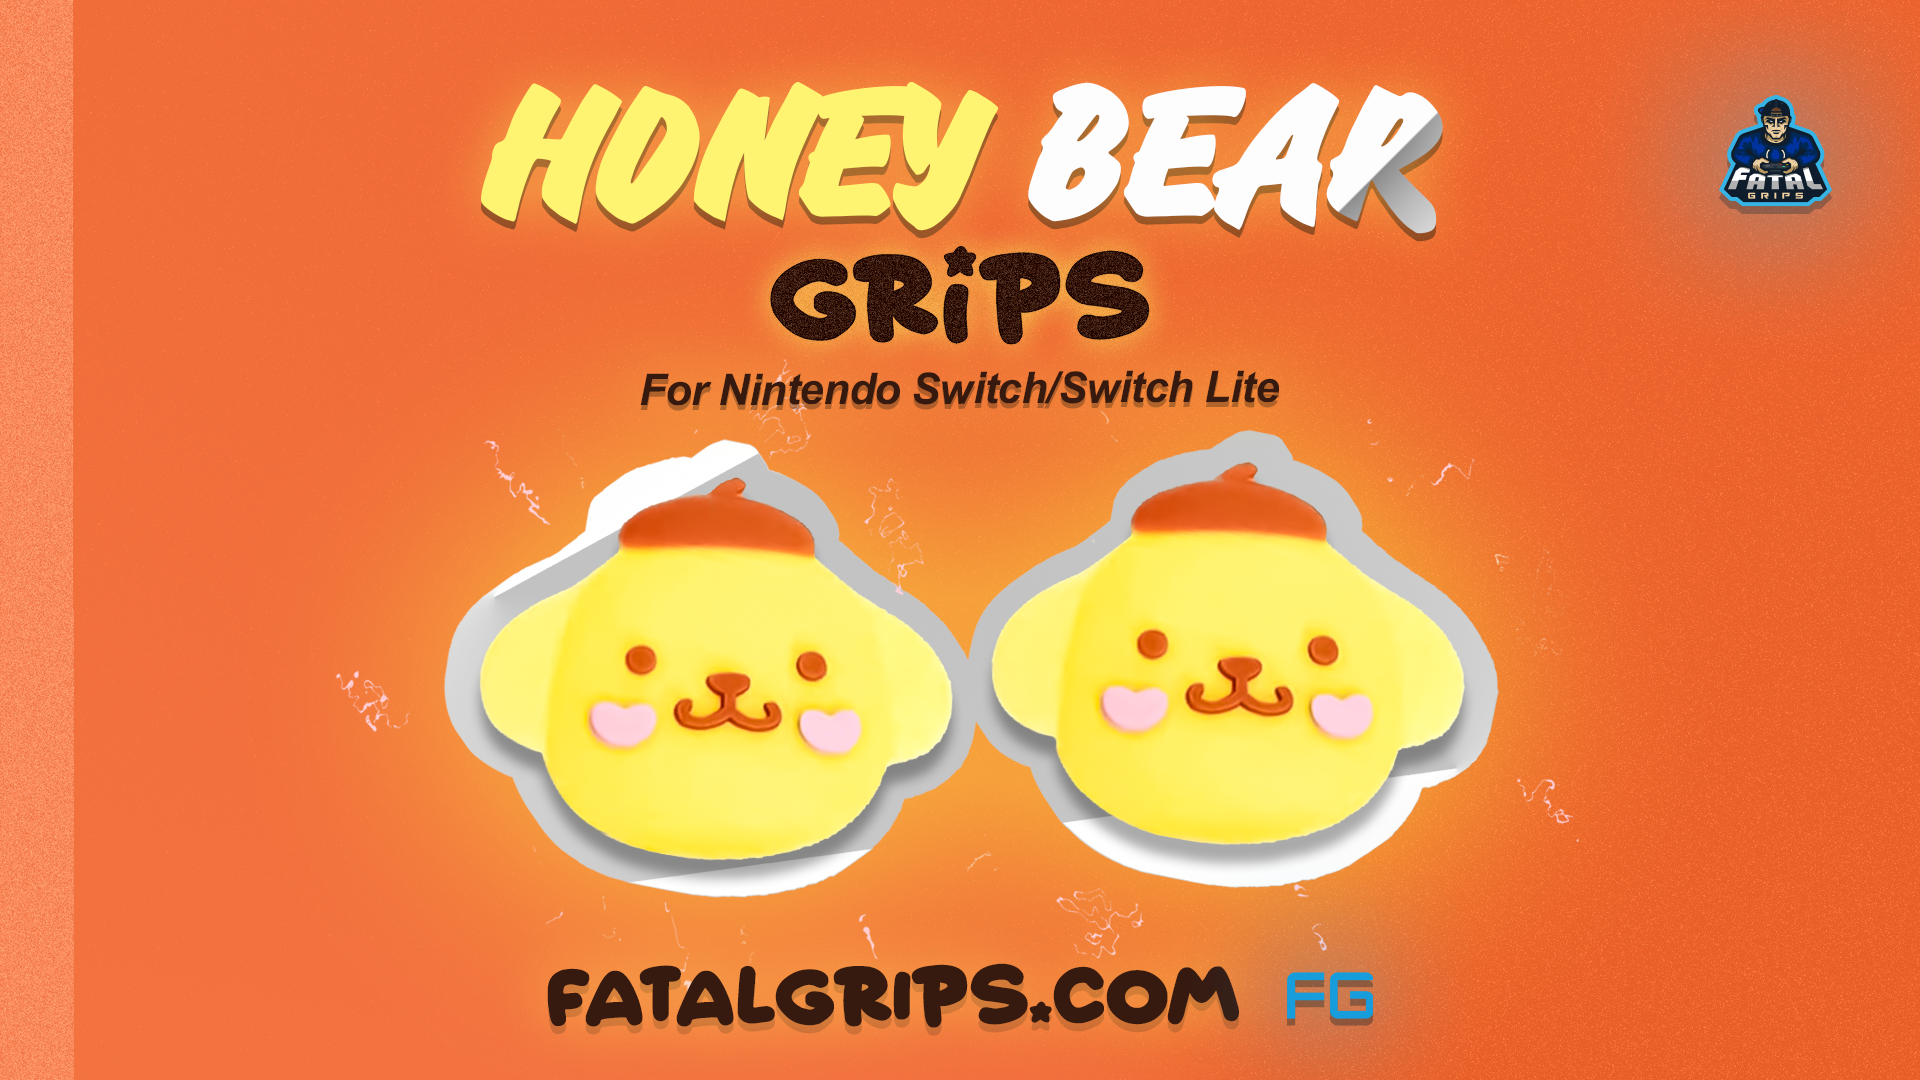 Honey Bear Grips